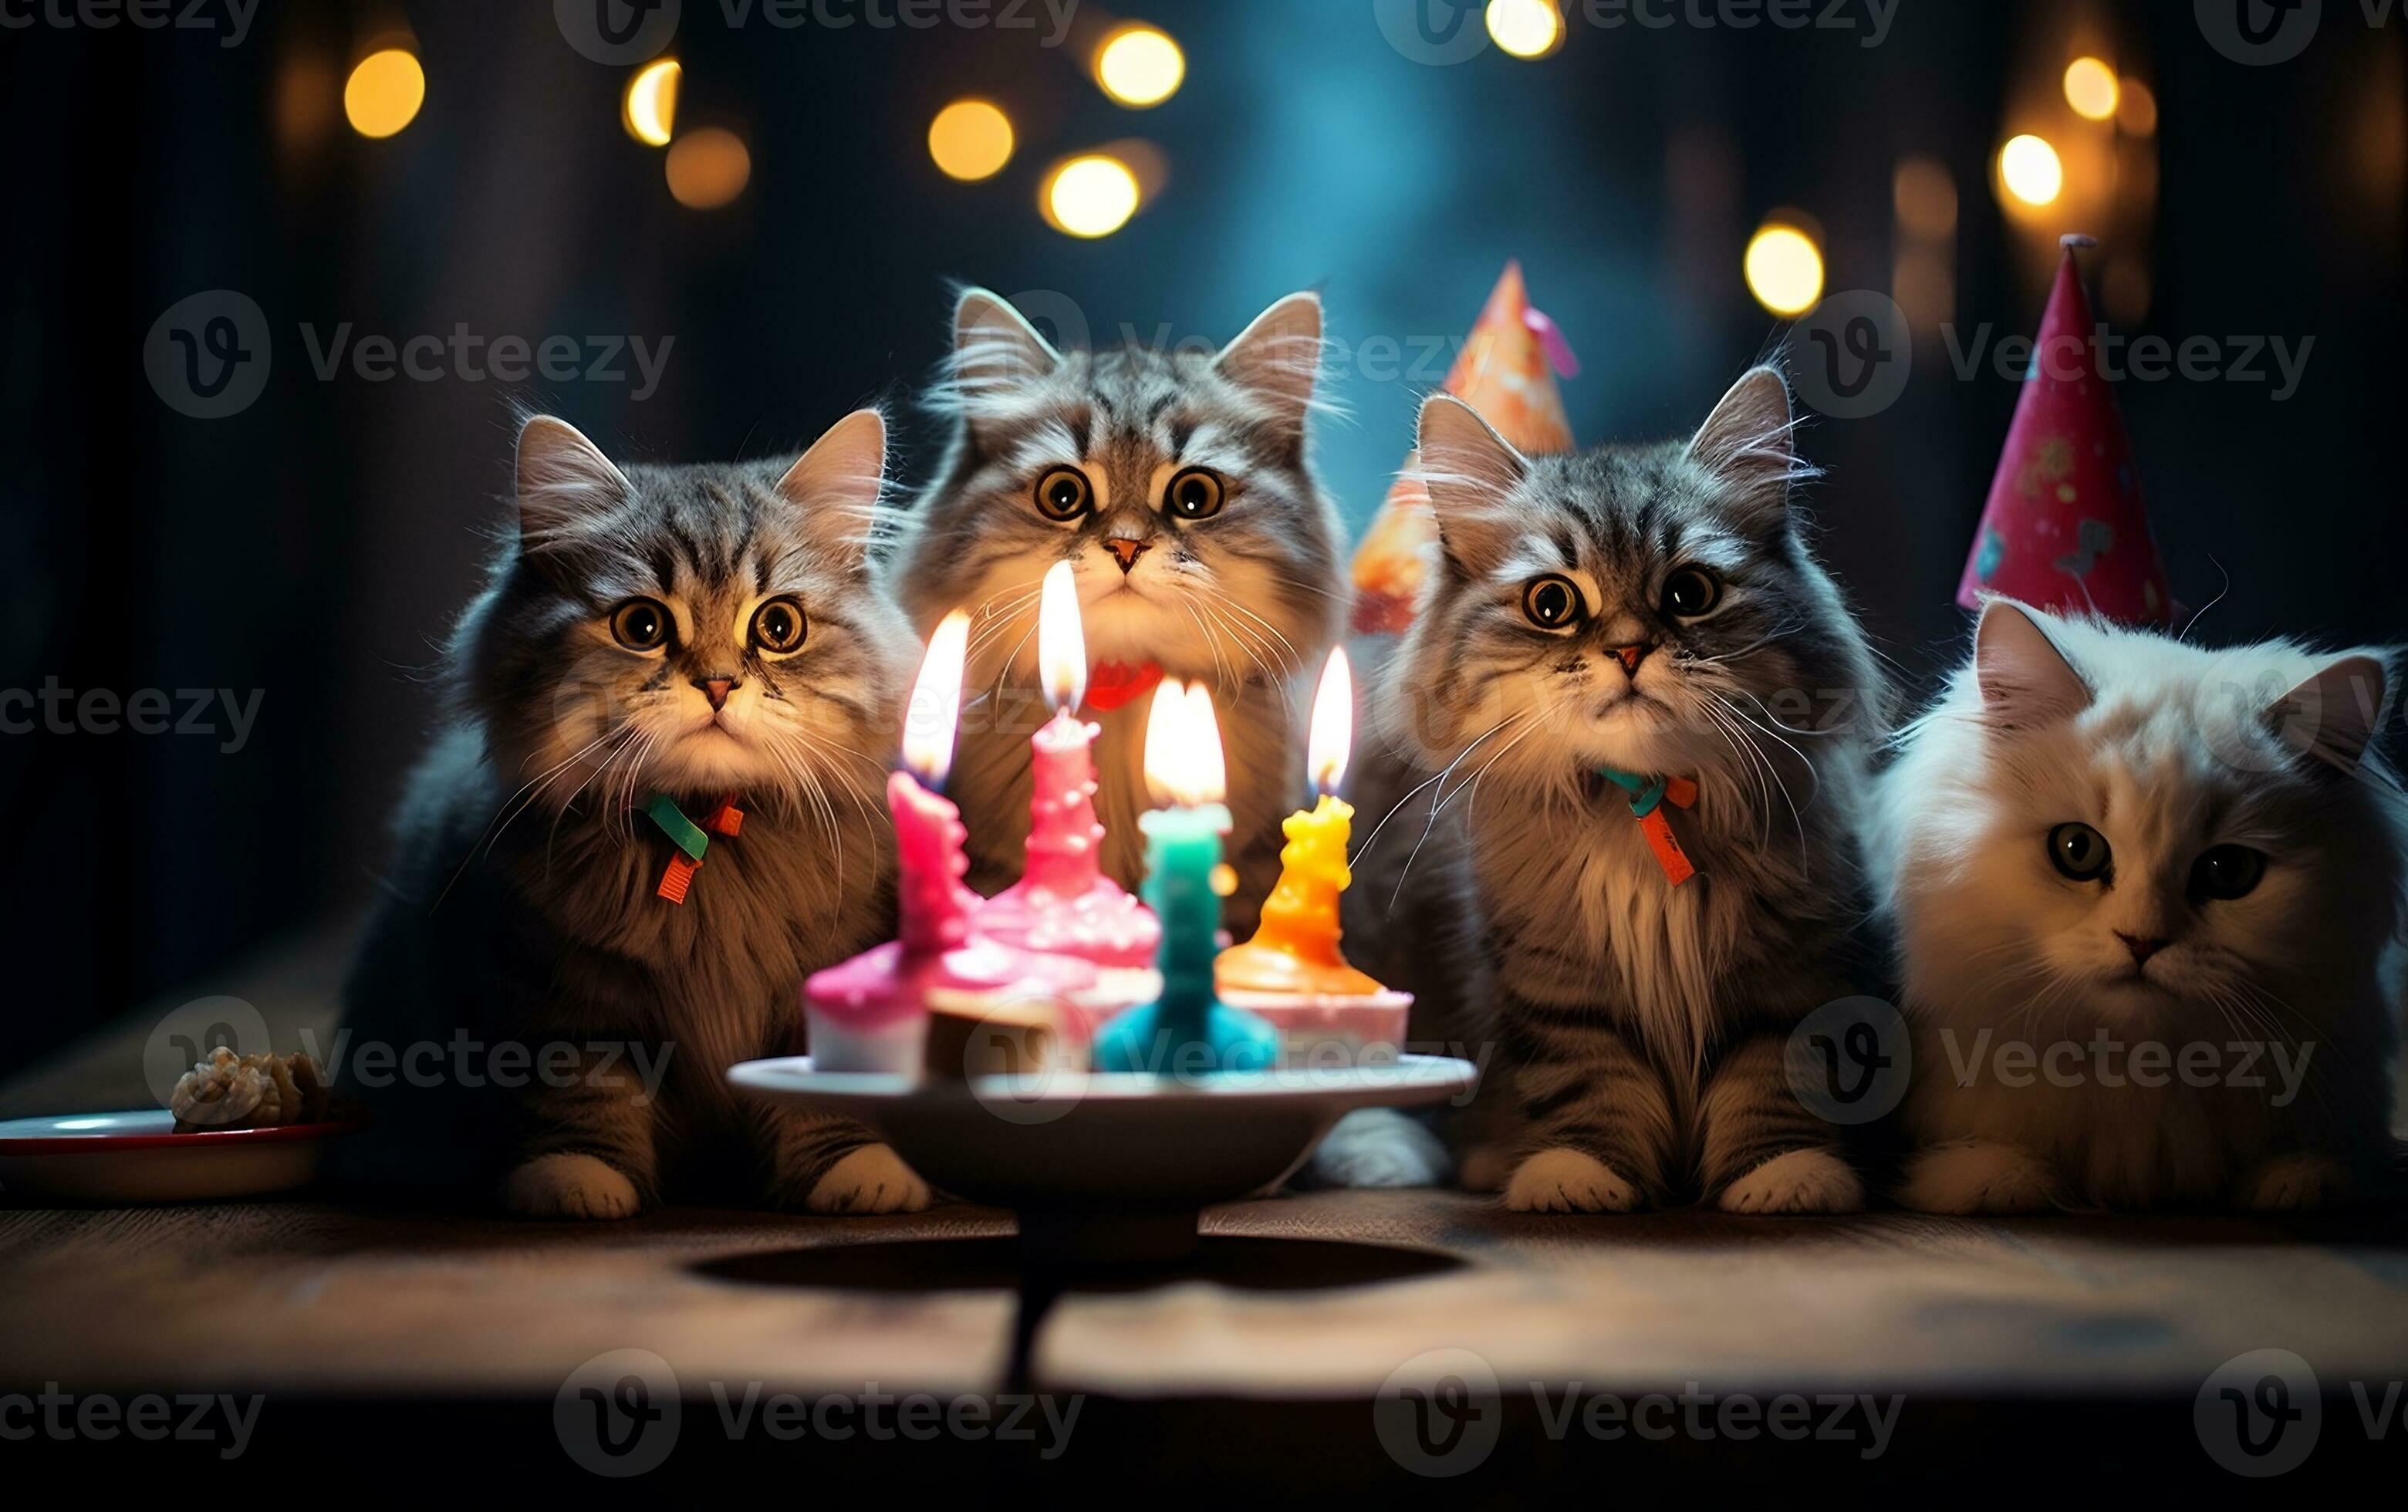 Pinterest Keywords  Cat birthday, Cat icon, Pinterest keywords